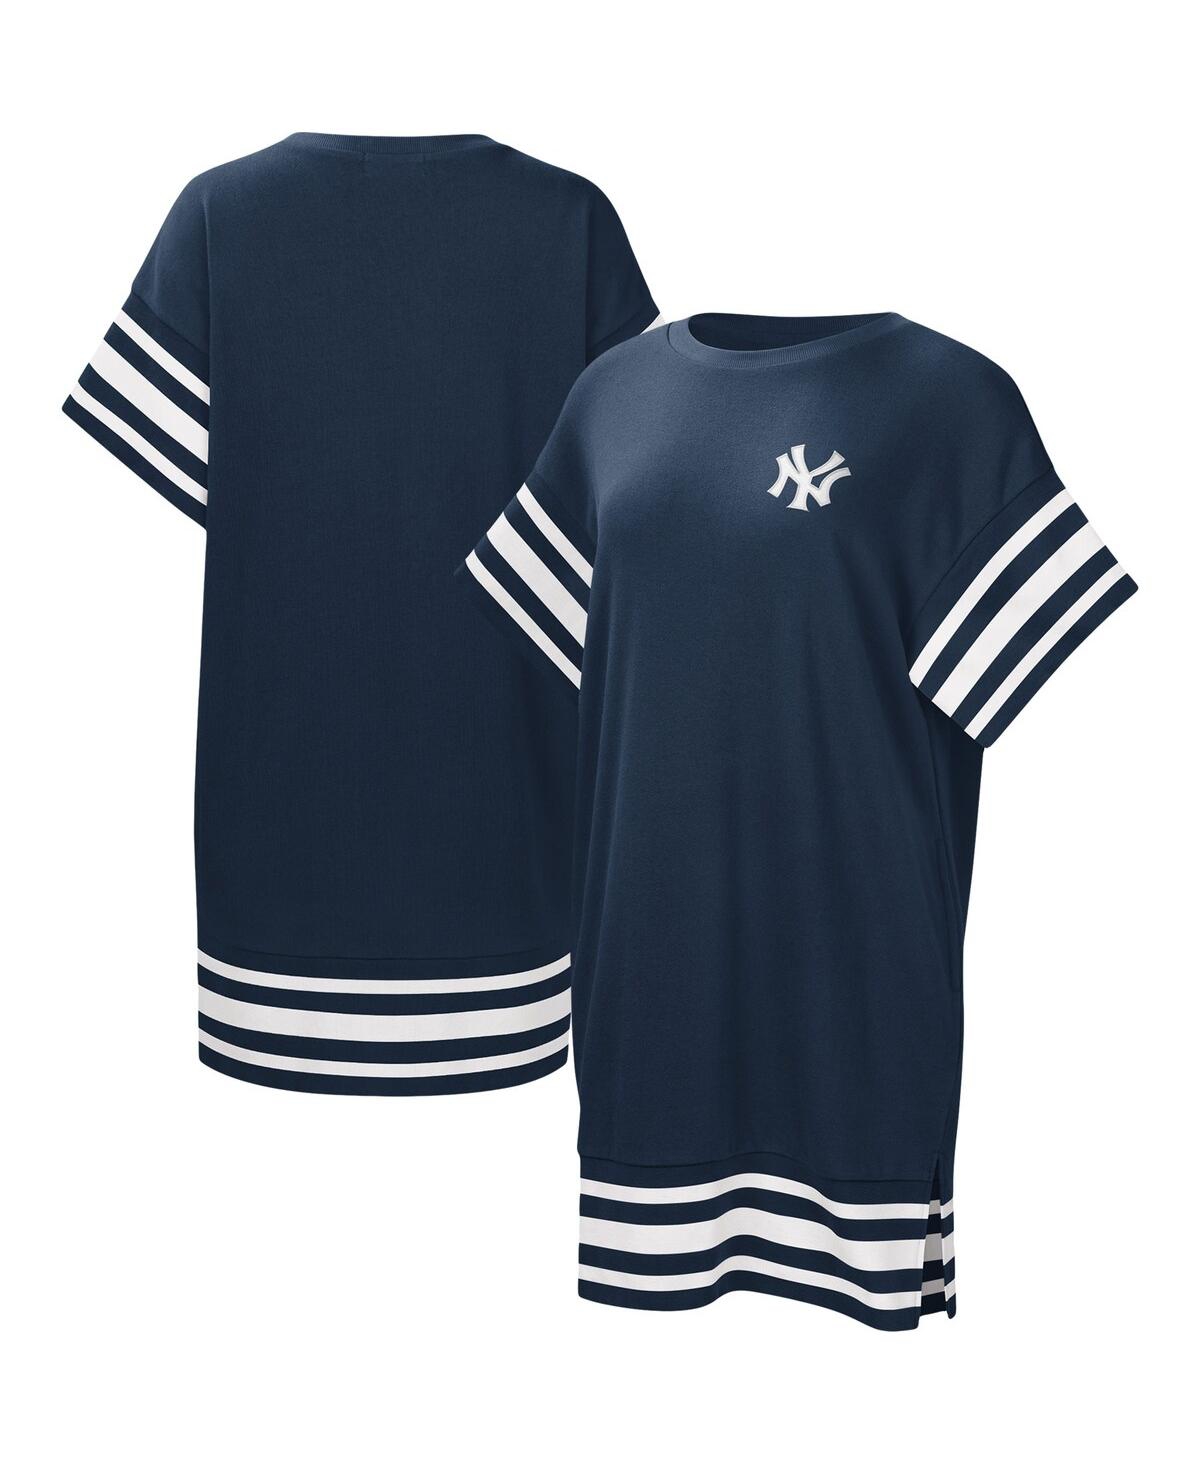 Women's Touch Navy New York Yankees Cascade T-shirt Dress - Navy